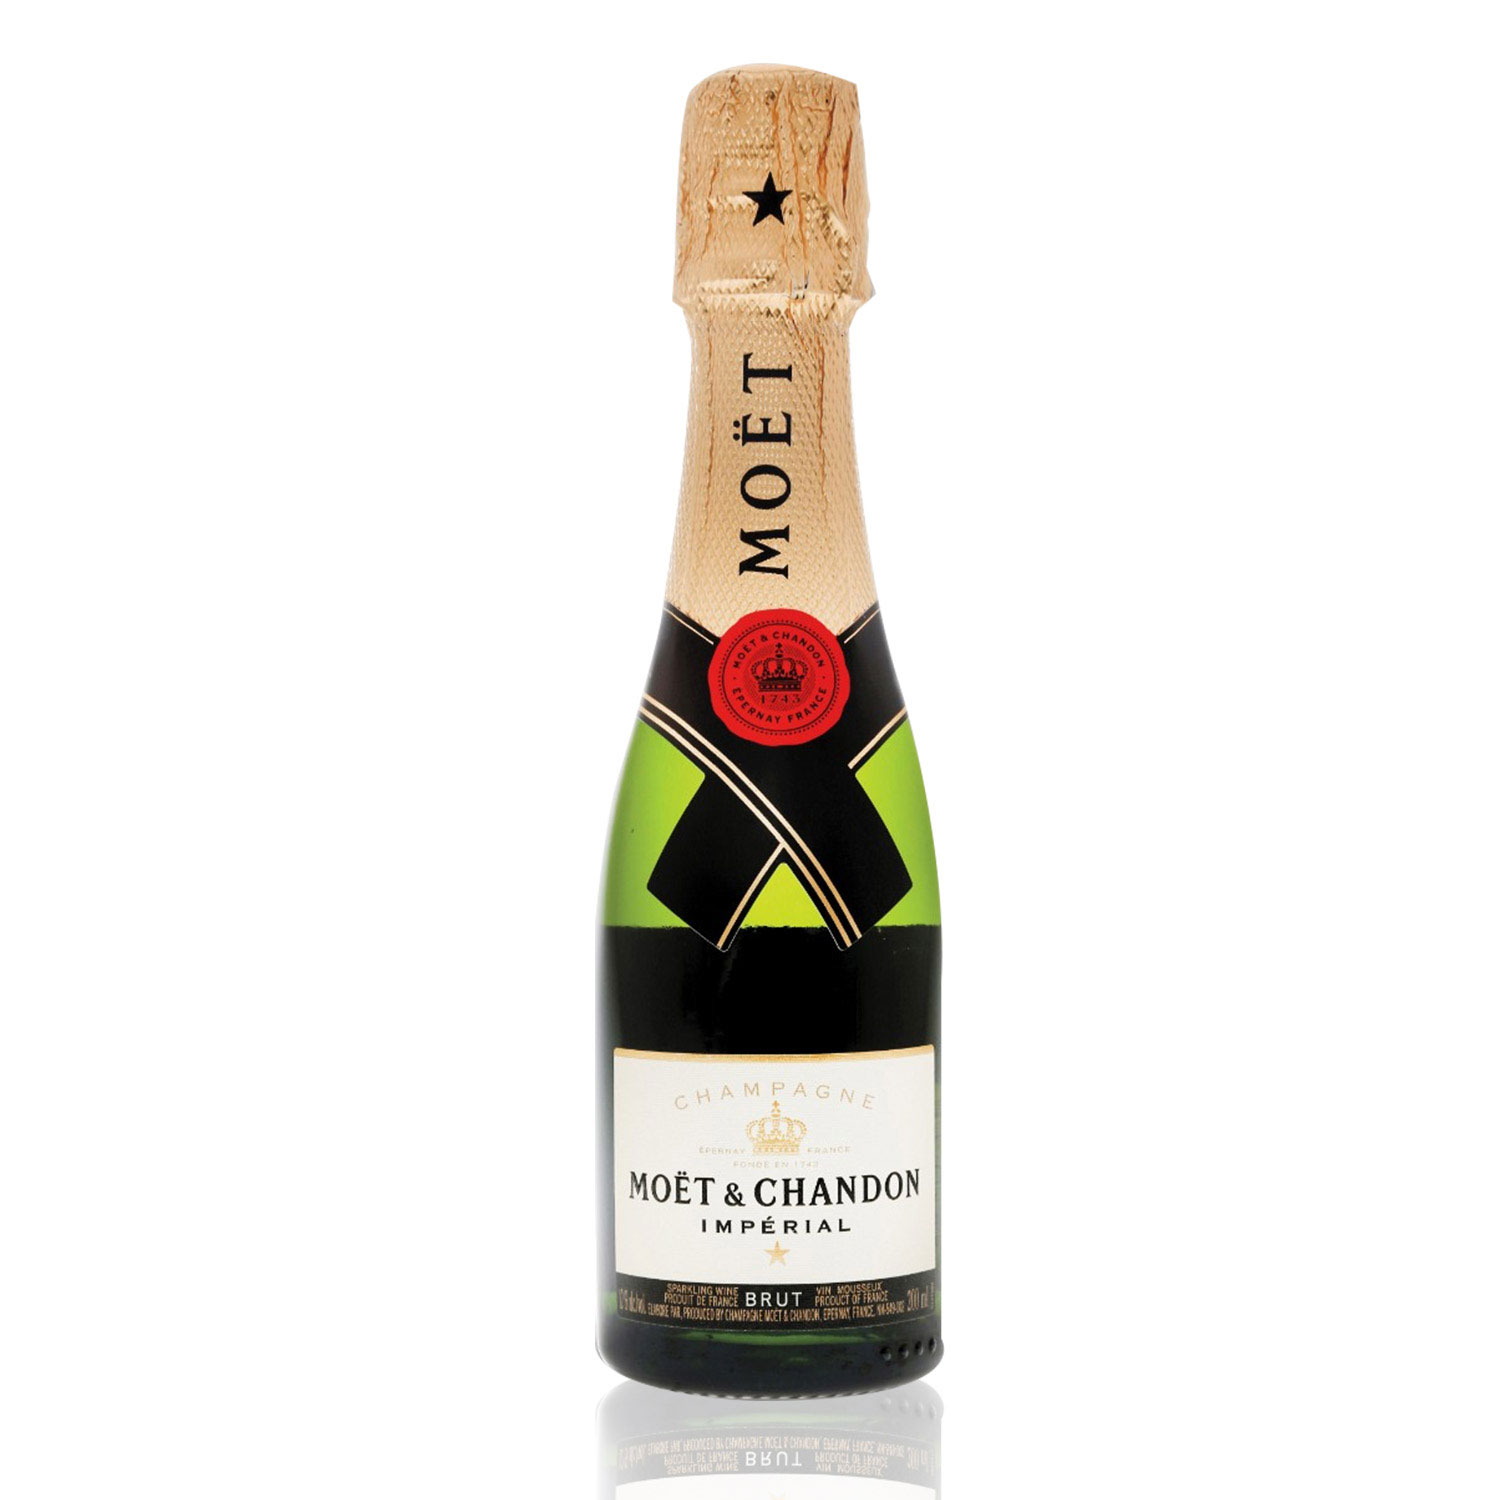 Champagne brut цена. Moet & Chandon, Brut "Imperial", 200 мл. Шампанское Моэт Шандон брют. Шандон Просекко. Brut Mini "Imperial".